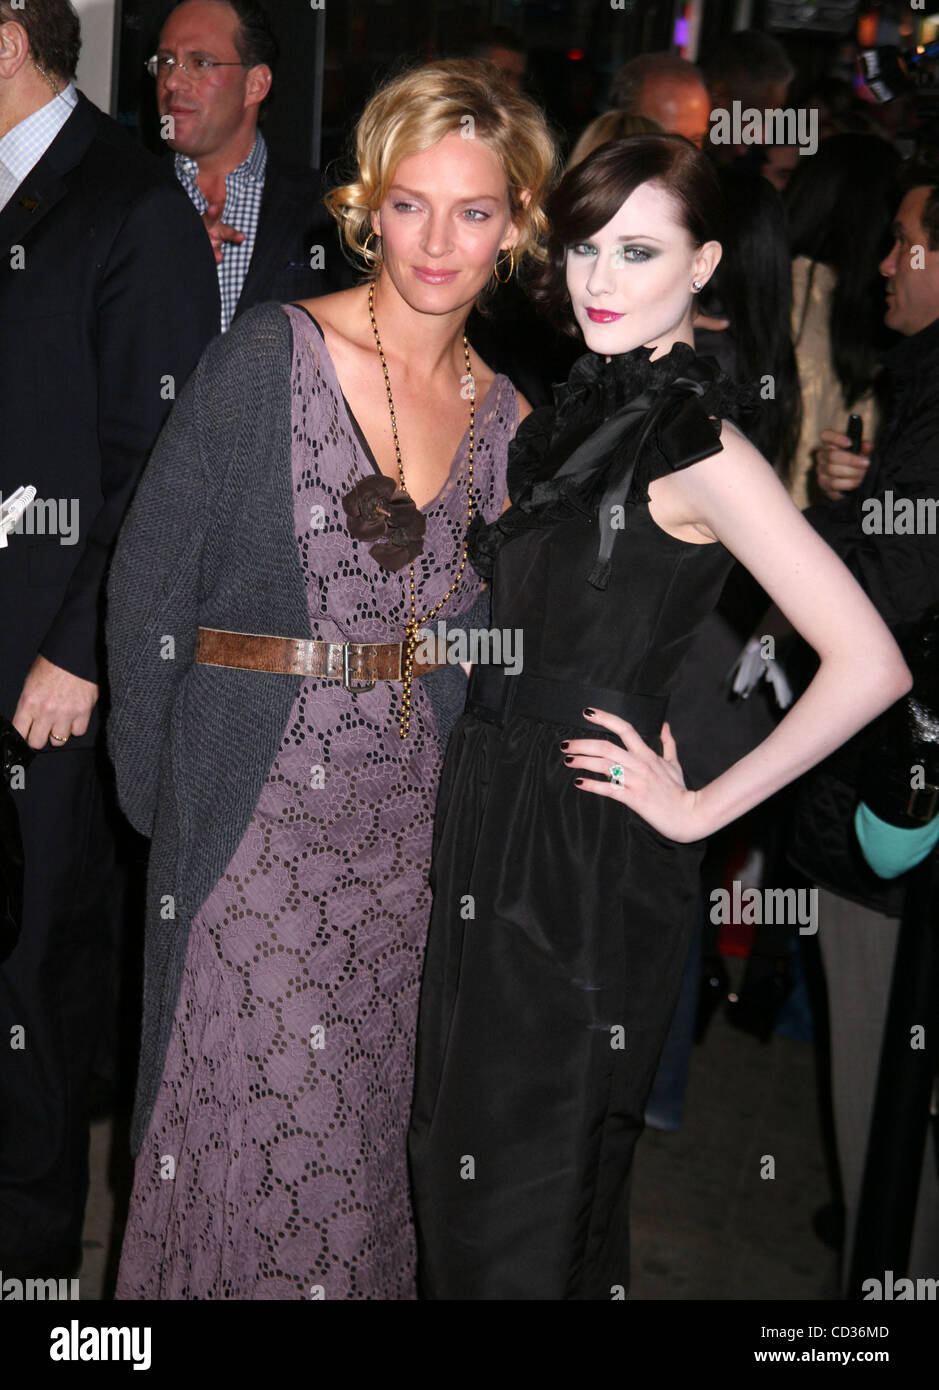 Apr 15, 2008 - New York, NY, USA - Actresses UMA THURMAN and EVAN ...